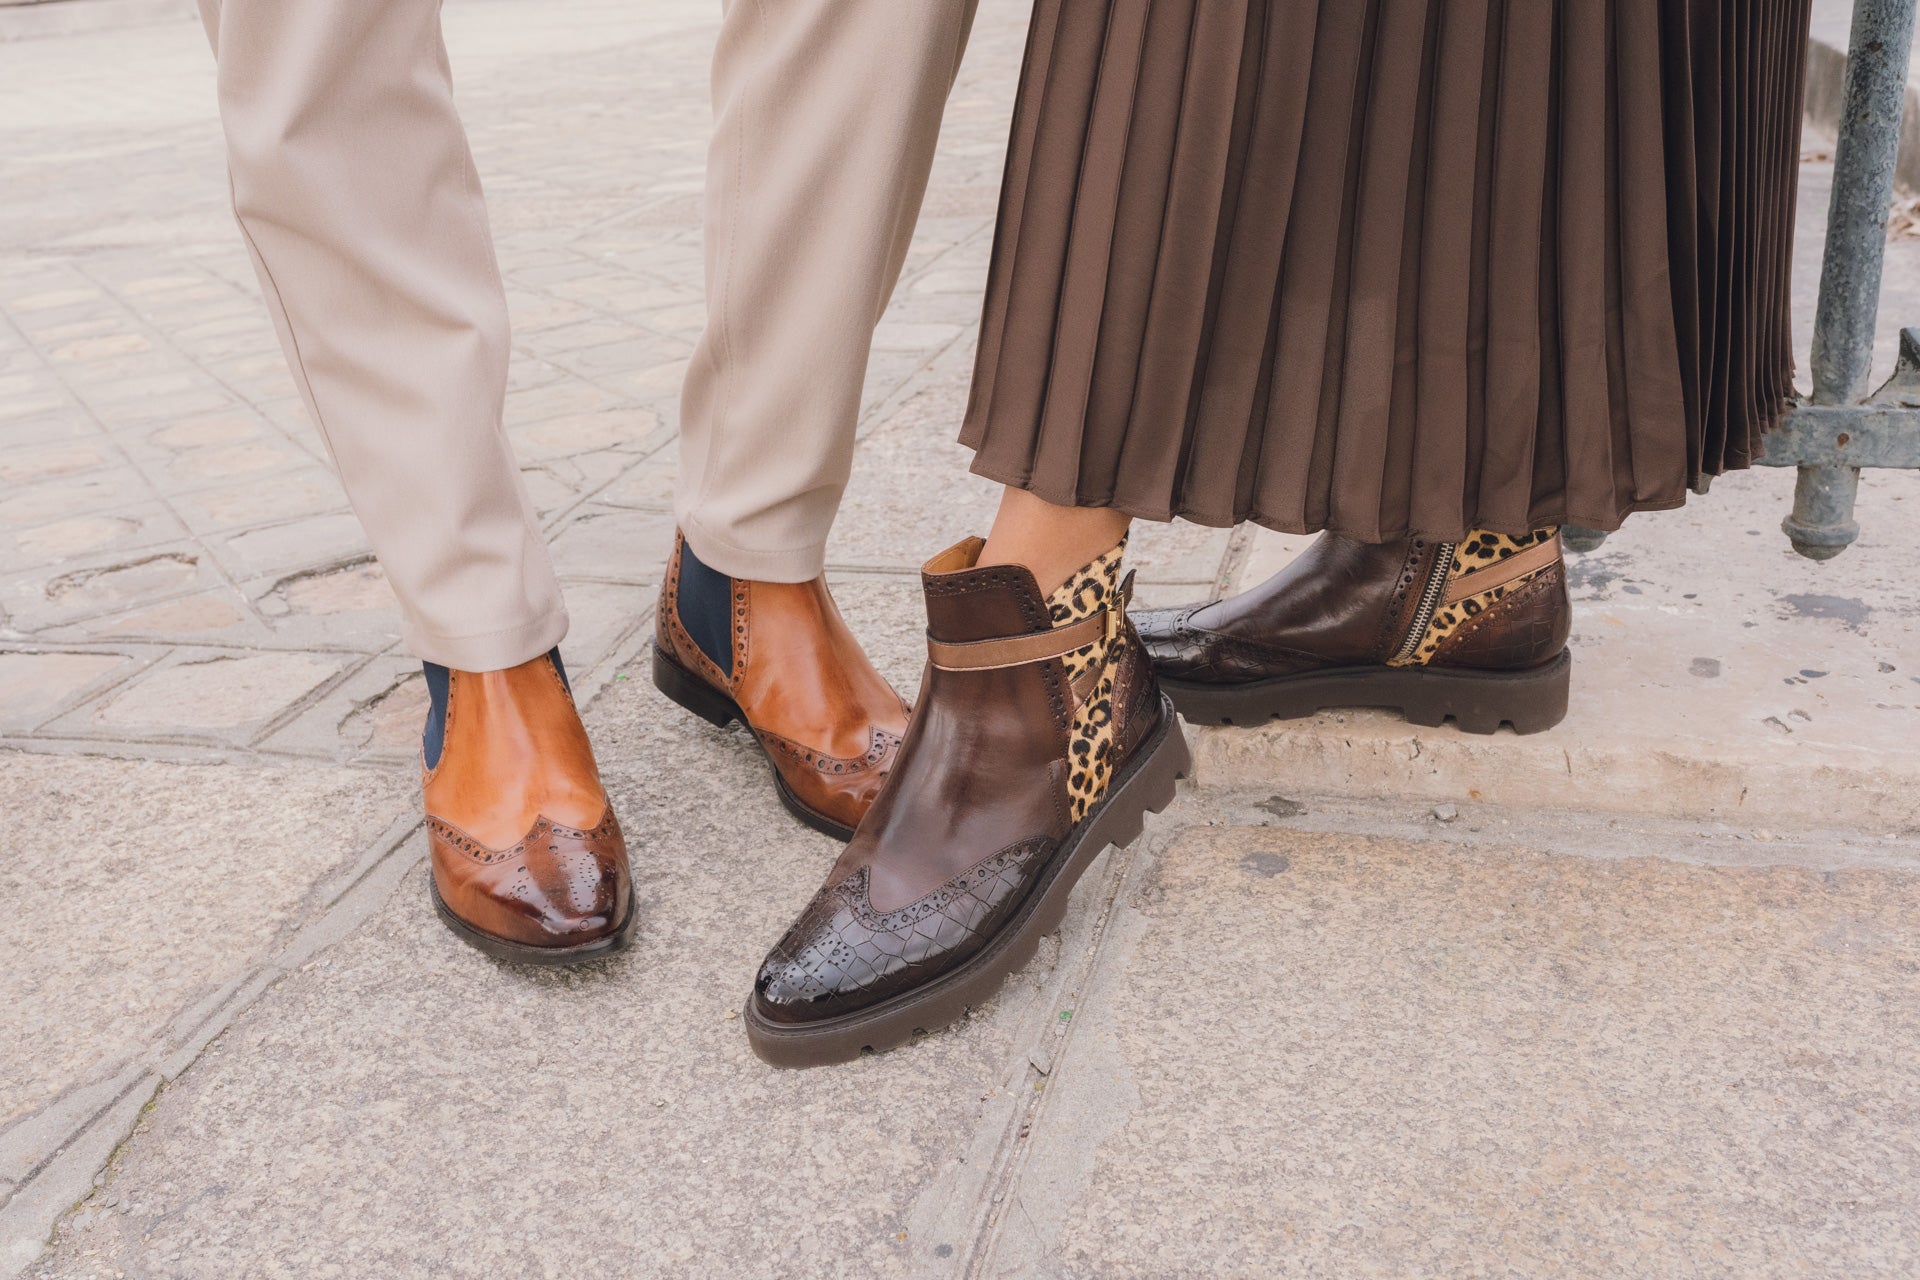 Chaussure homme tendance – Les valeurs sûres du vintage